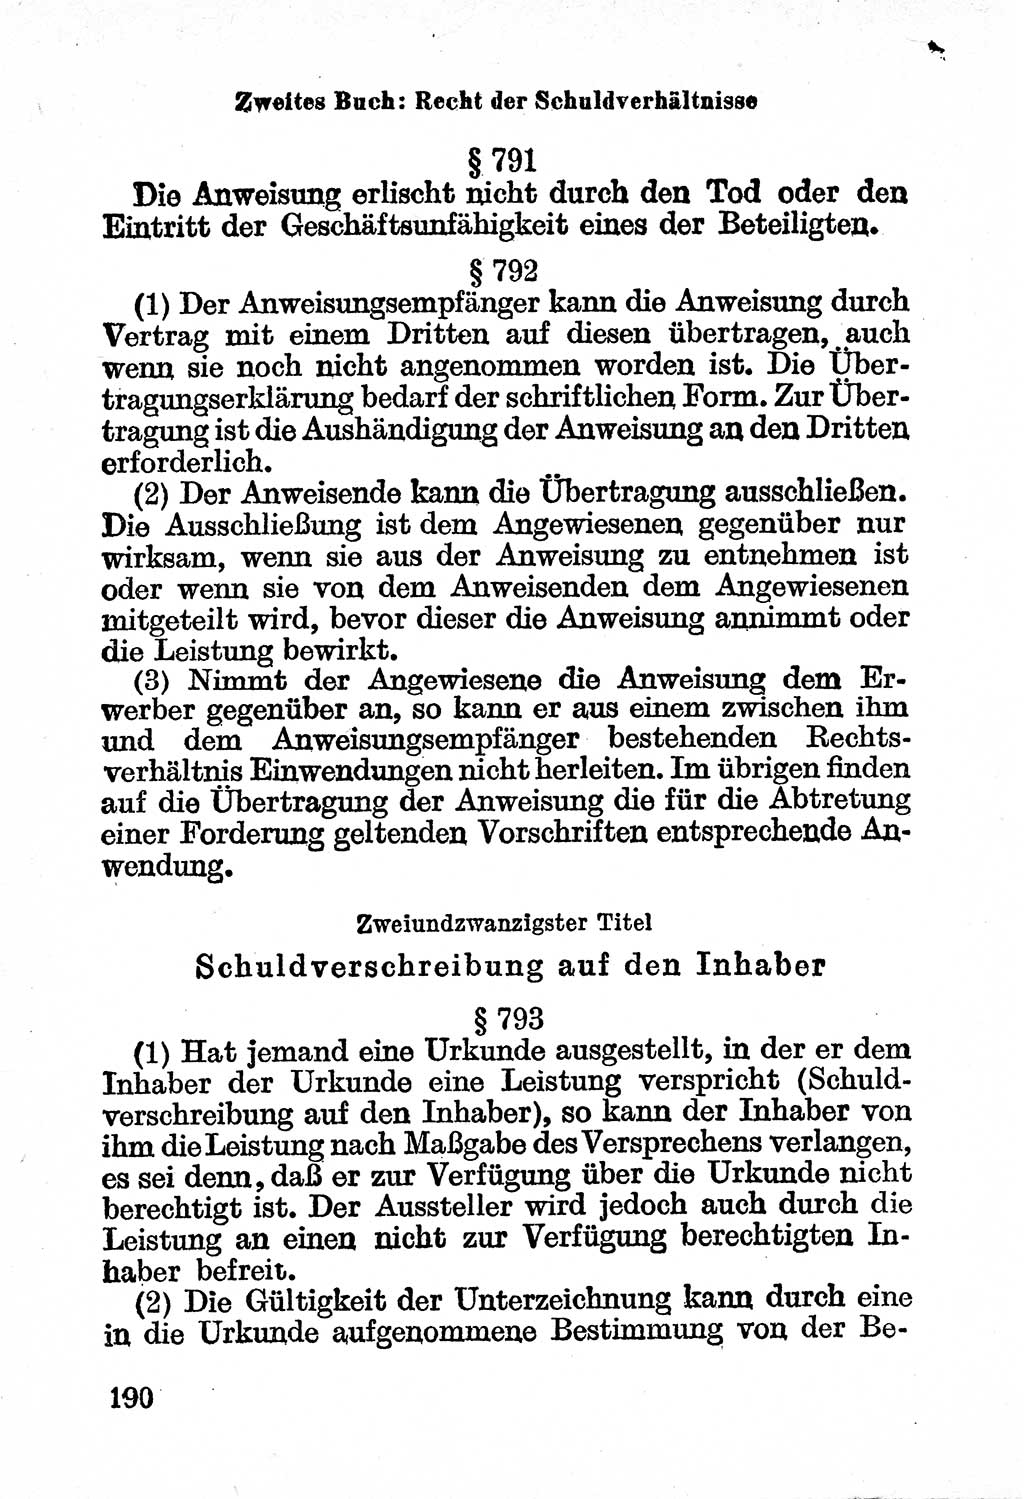 Bürgerliches Gesetzbuch (BGB) nebst wichtigen Nebengesetzen [Deutsche Demokratische Republik (DDR)] 1956, Seite 190 (BGB Nebenges. DDR 1956, S. 190)